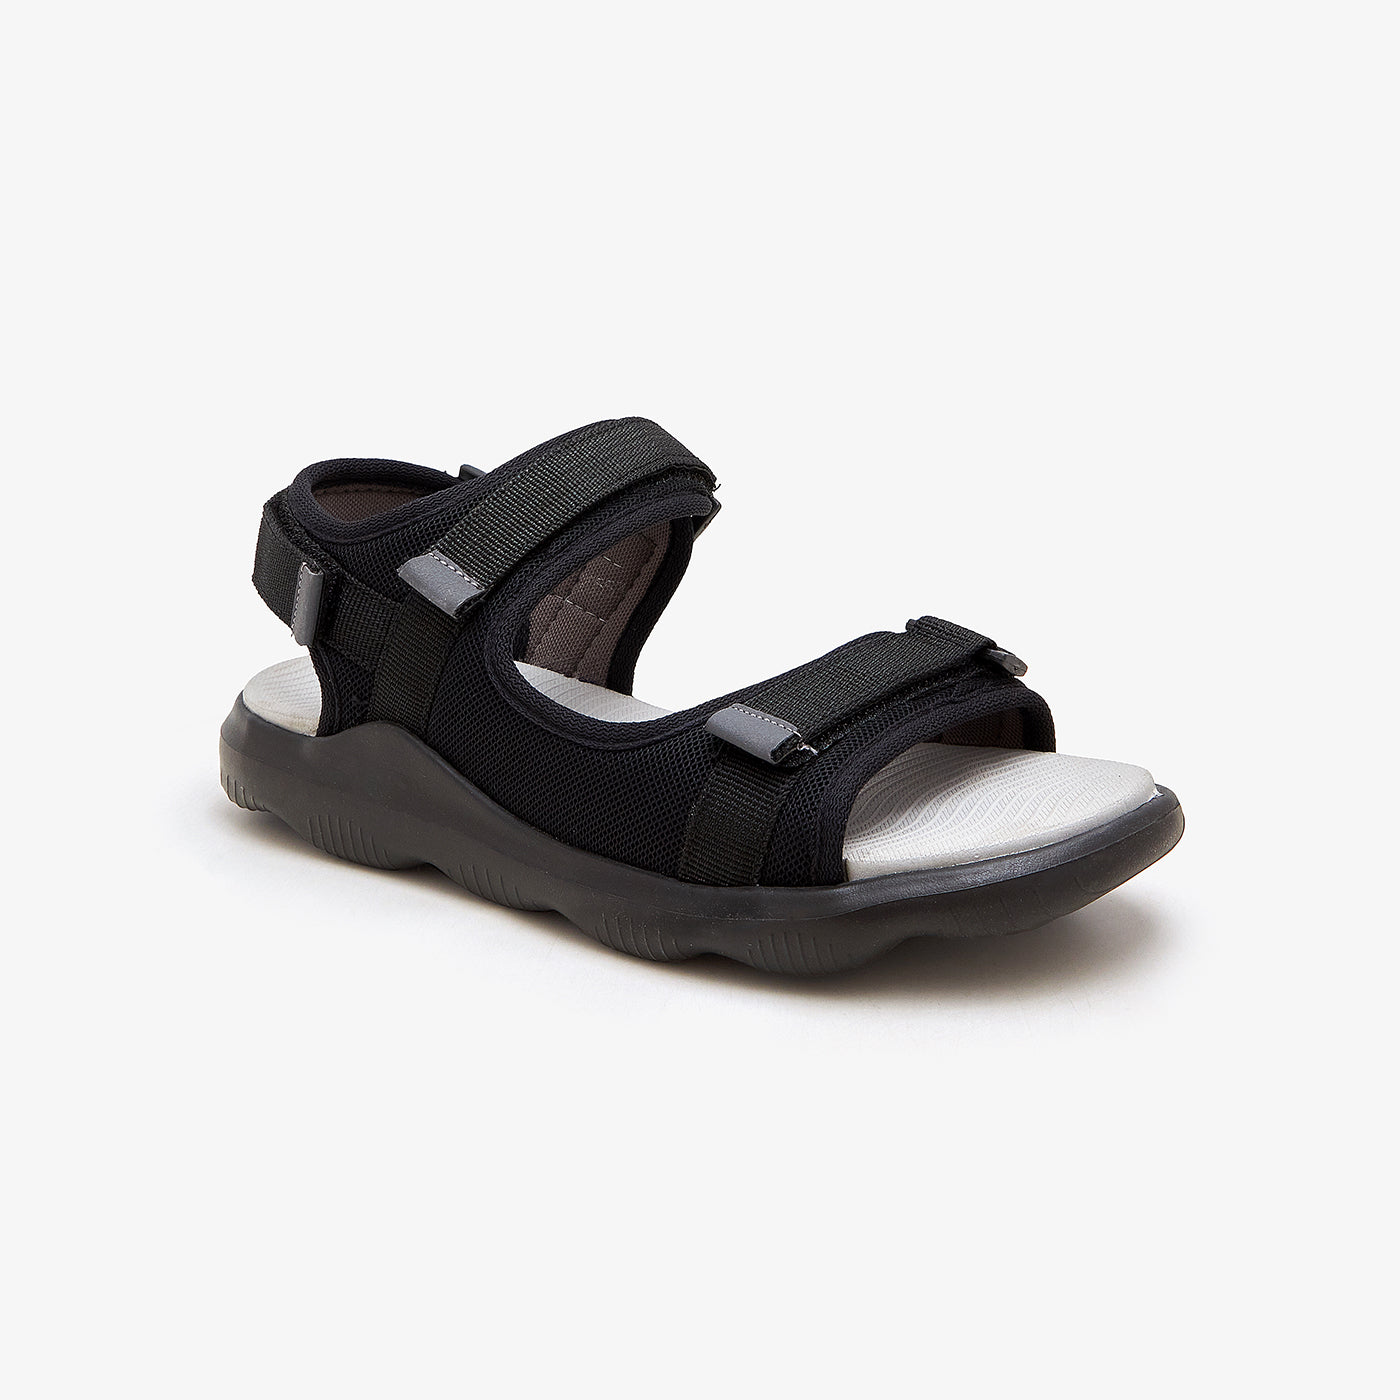 Buy BLK/GRY Smart Sandals for Men – Ndure.com